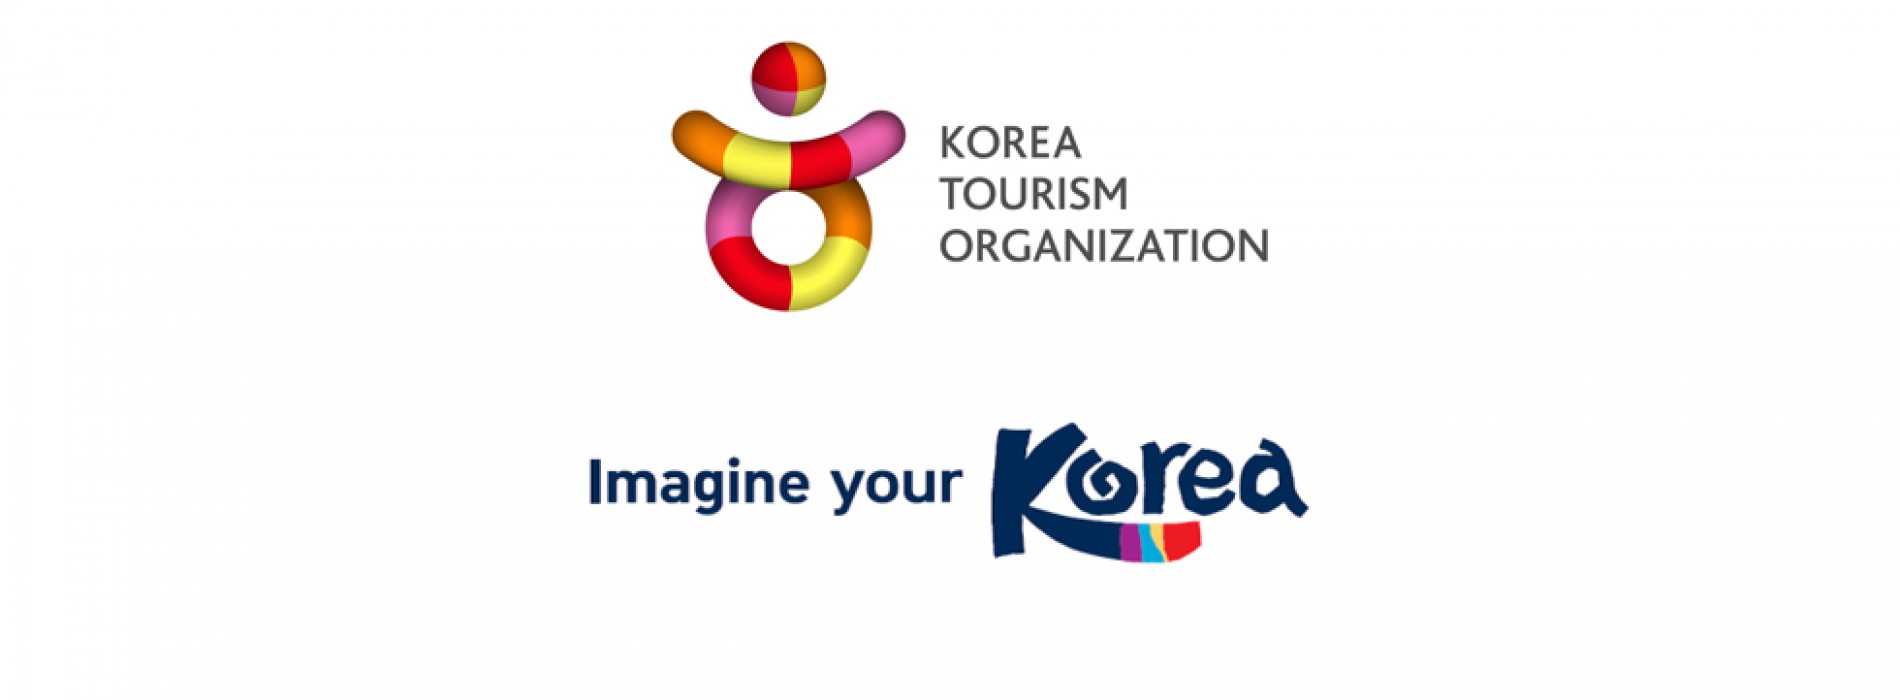 korea tourism organization thailand